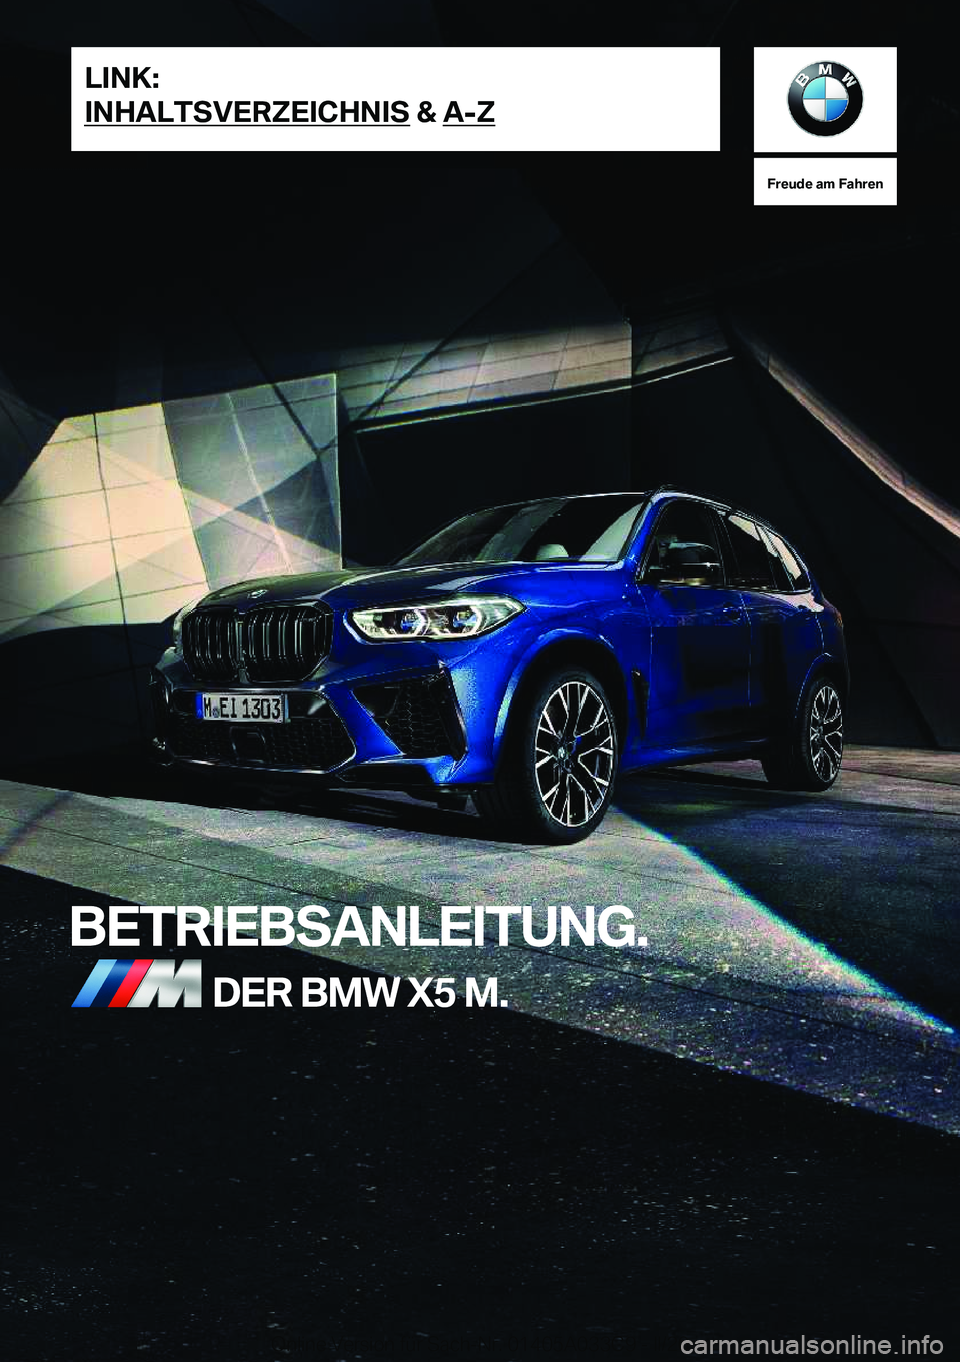 BMW X5 M 2020  Betriebsanleitungen (in German) �F�r�e�u�d�e��a�m��F�a�h�r�e�n
�B�E�T�R�I�E�B�S�A�N�L�E�I�T�U�N�G�.�D�E�R��B�M�W��X�5��M�.�L�I�N�K�:
�I�N�H�A�L�T�S�V�E�R�Z�E�I�C�H�N�I�S��&��A�-�Z�O�n�l�i�n�e��V�e�r�s�i�o�n��f�